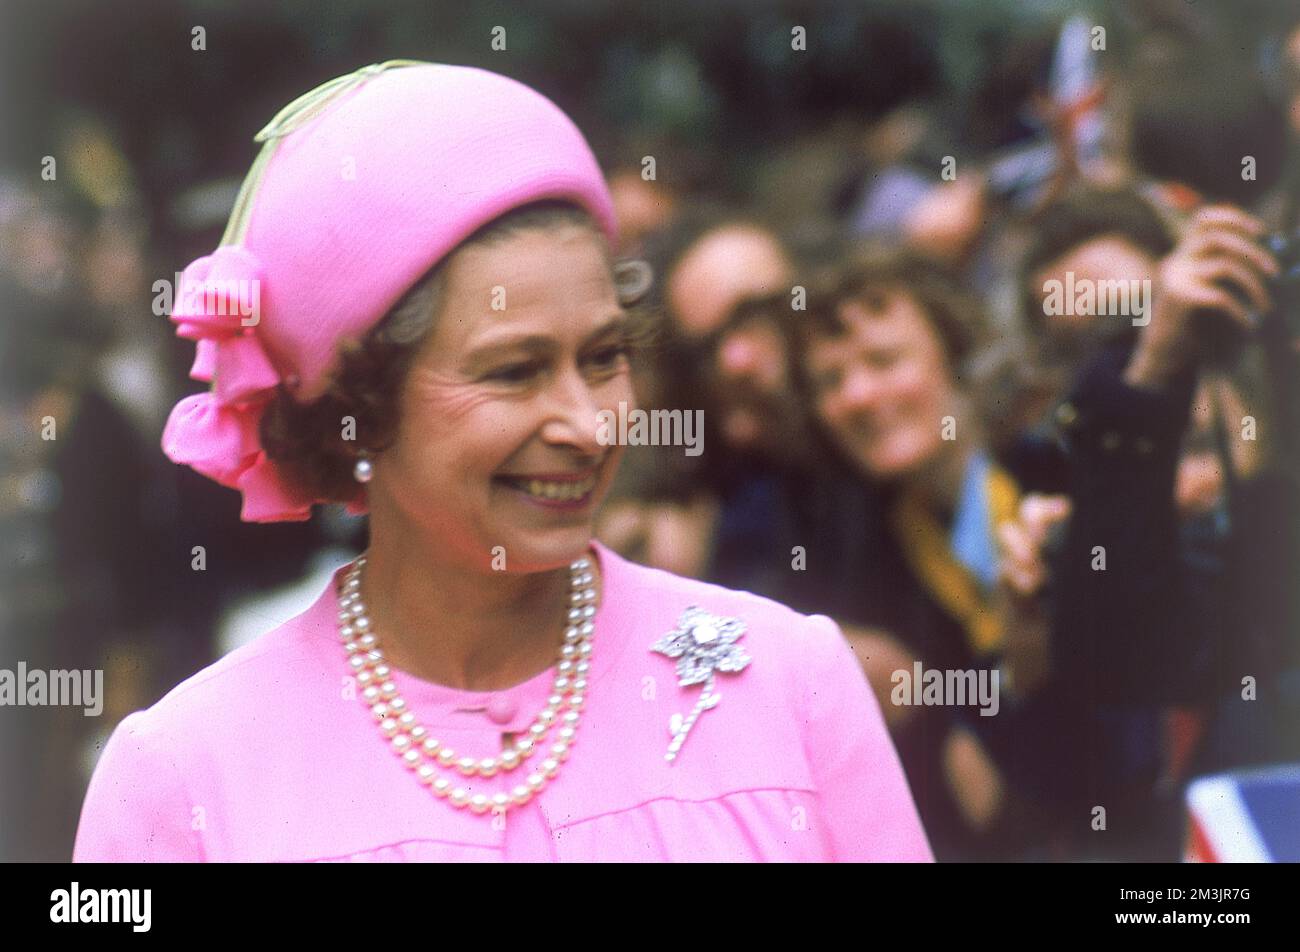 La reine Elizabeth II, une vision en rose, est accueillie par une foule lors d'une promenade royale à Londres pour le Jubilé d'argent, 1977. Date: 1977 Banque D'Images